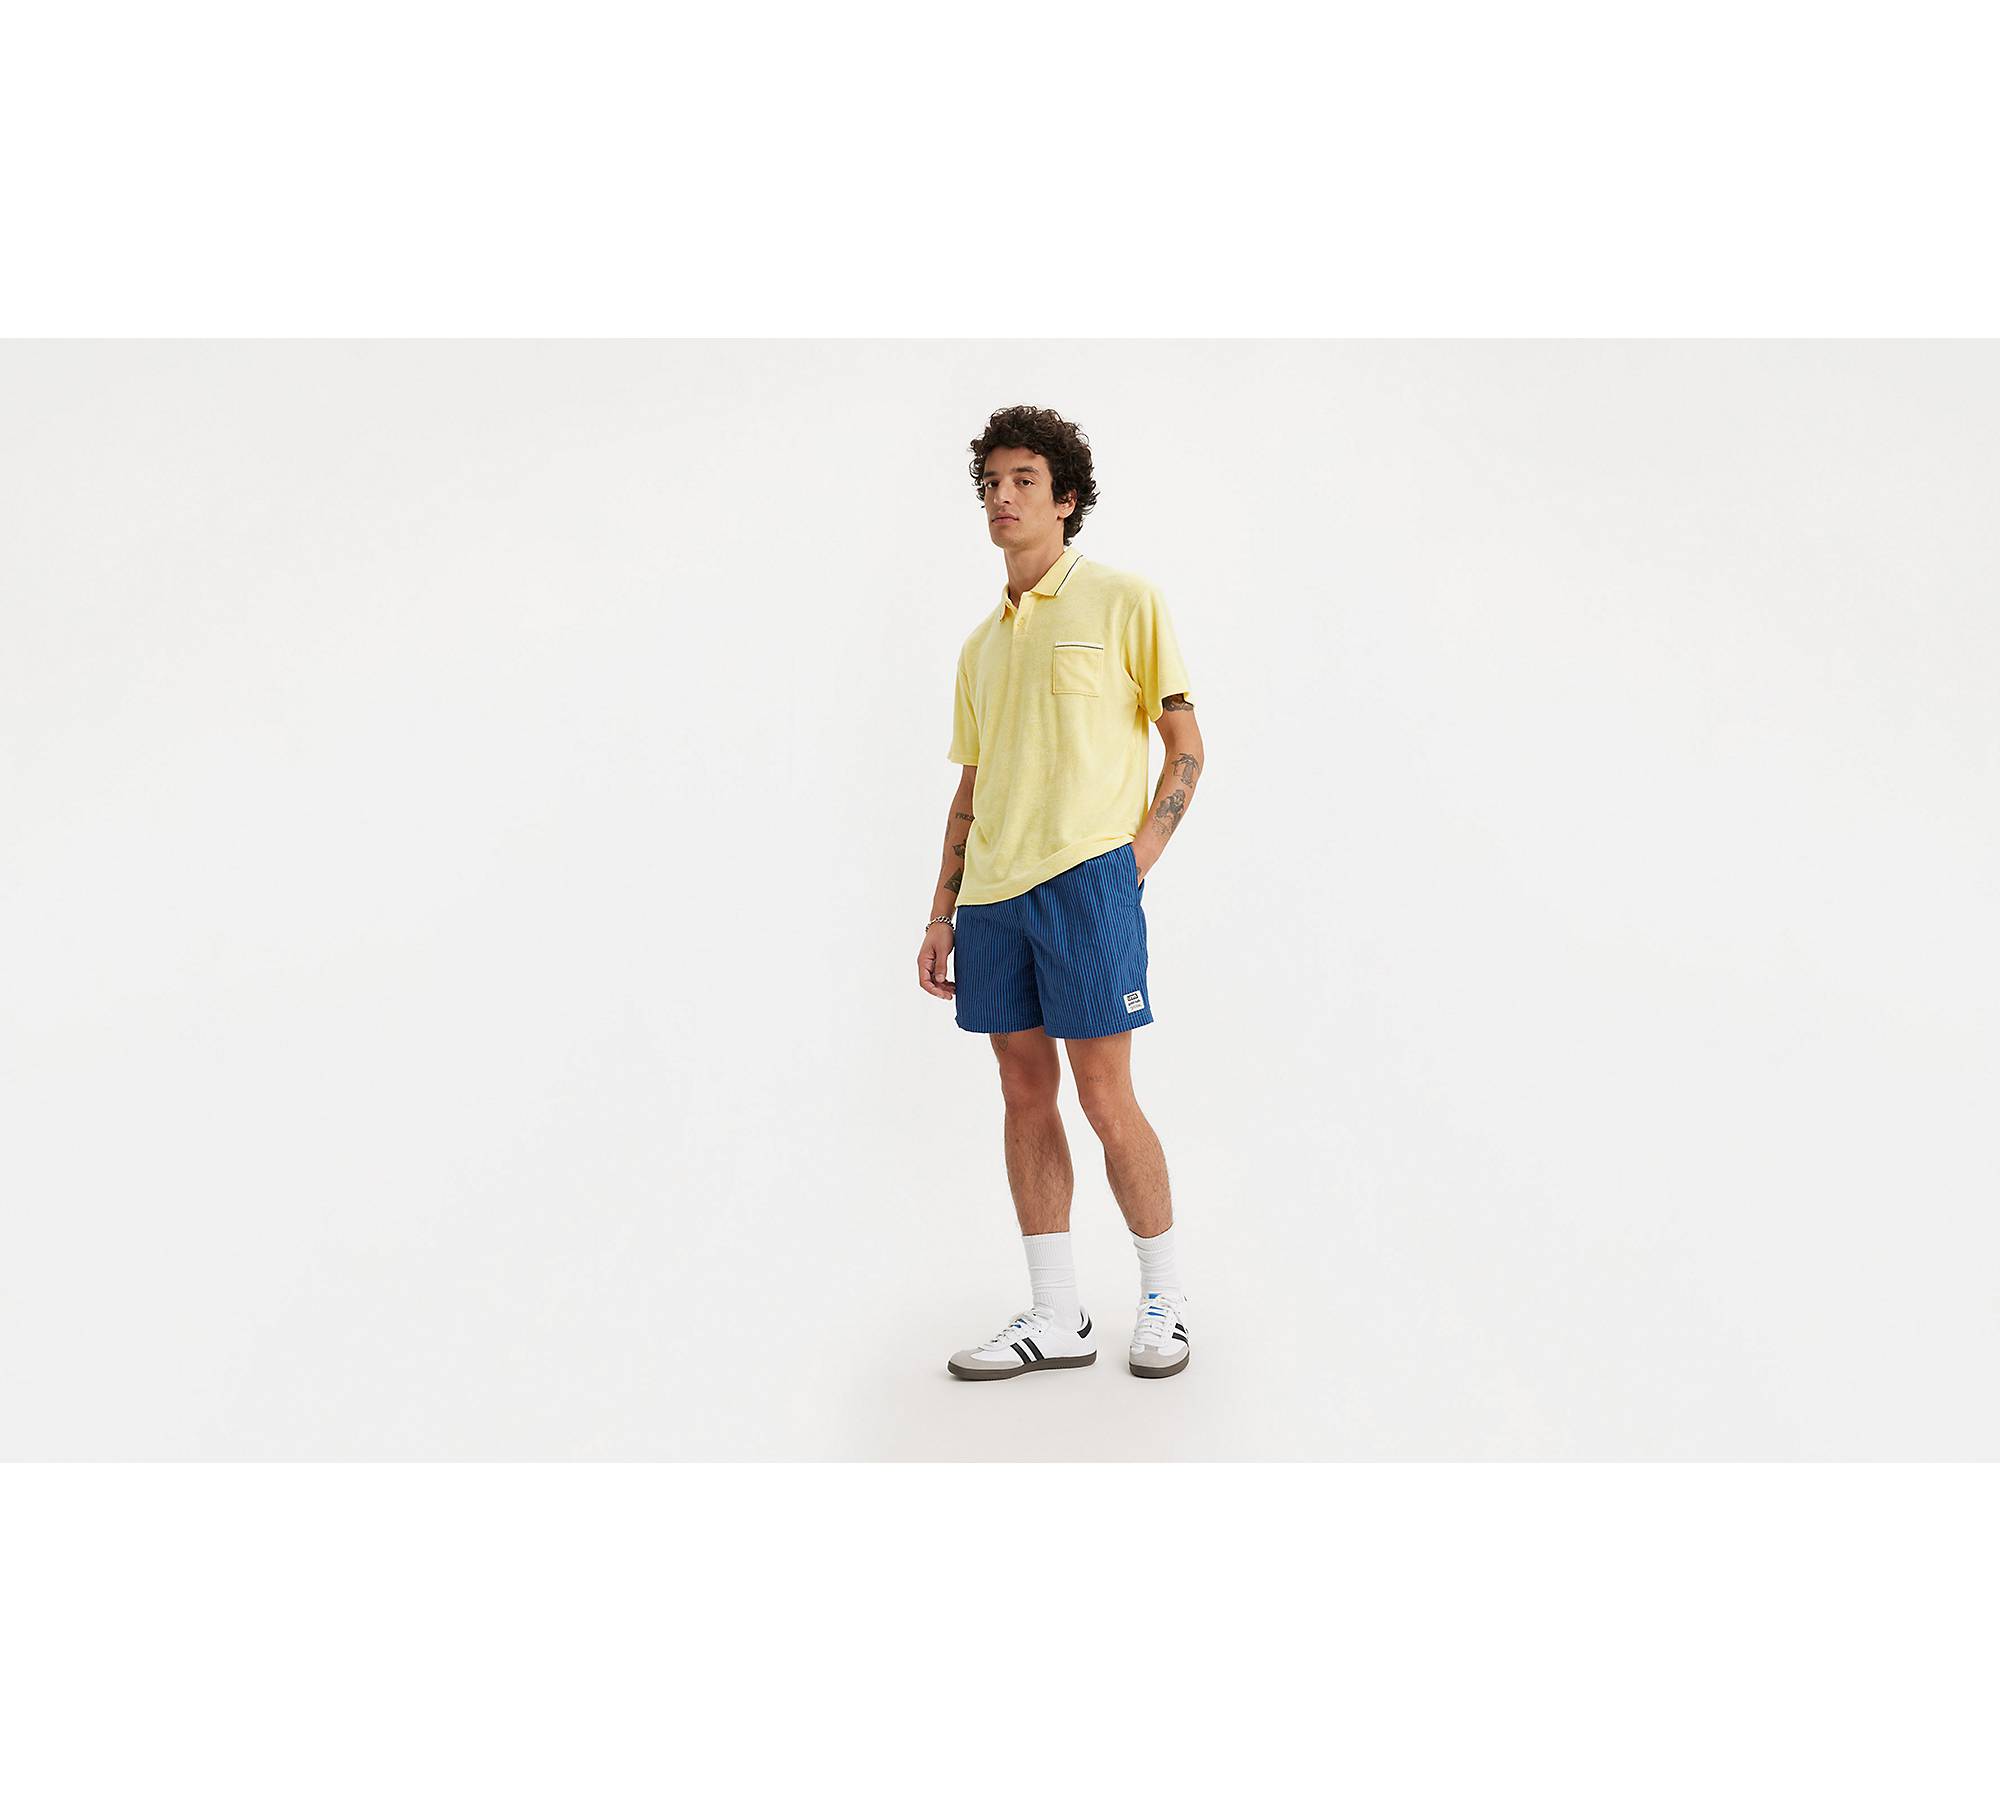 Women's Nike NY Gingham Yoga shorts, XS, white/yellow